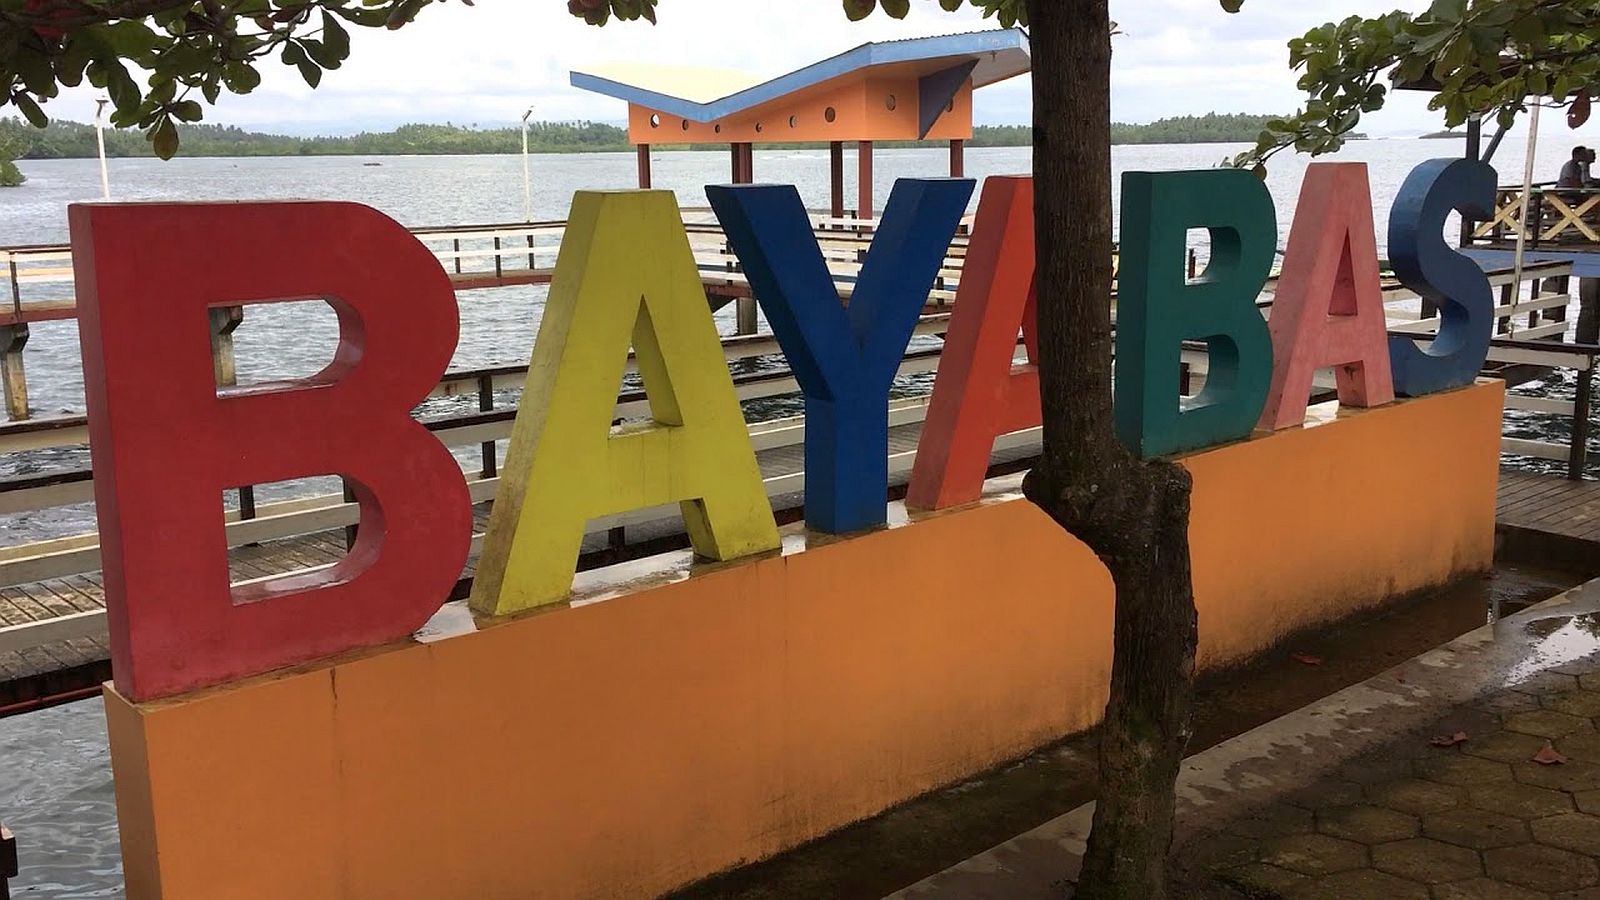 PHILIPPINEN REISEN - ORTE - MINDANAO - SURIGAO DEL SUR - Touristische Ortsbeschreibung für Bayabas